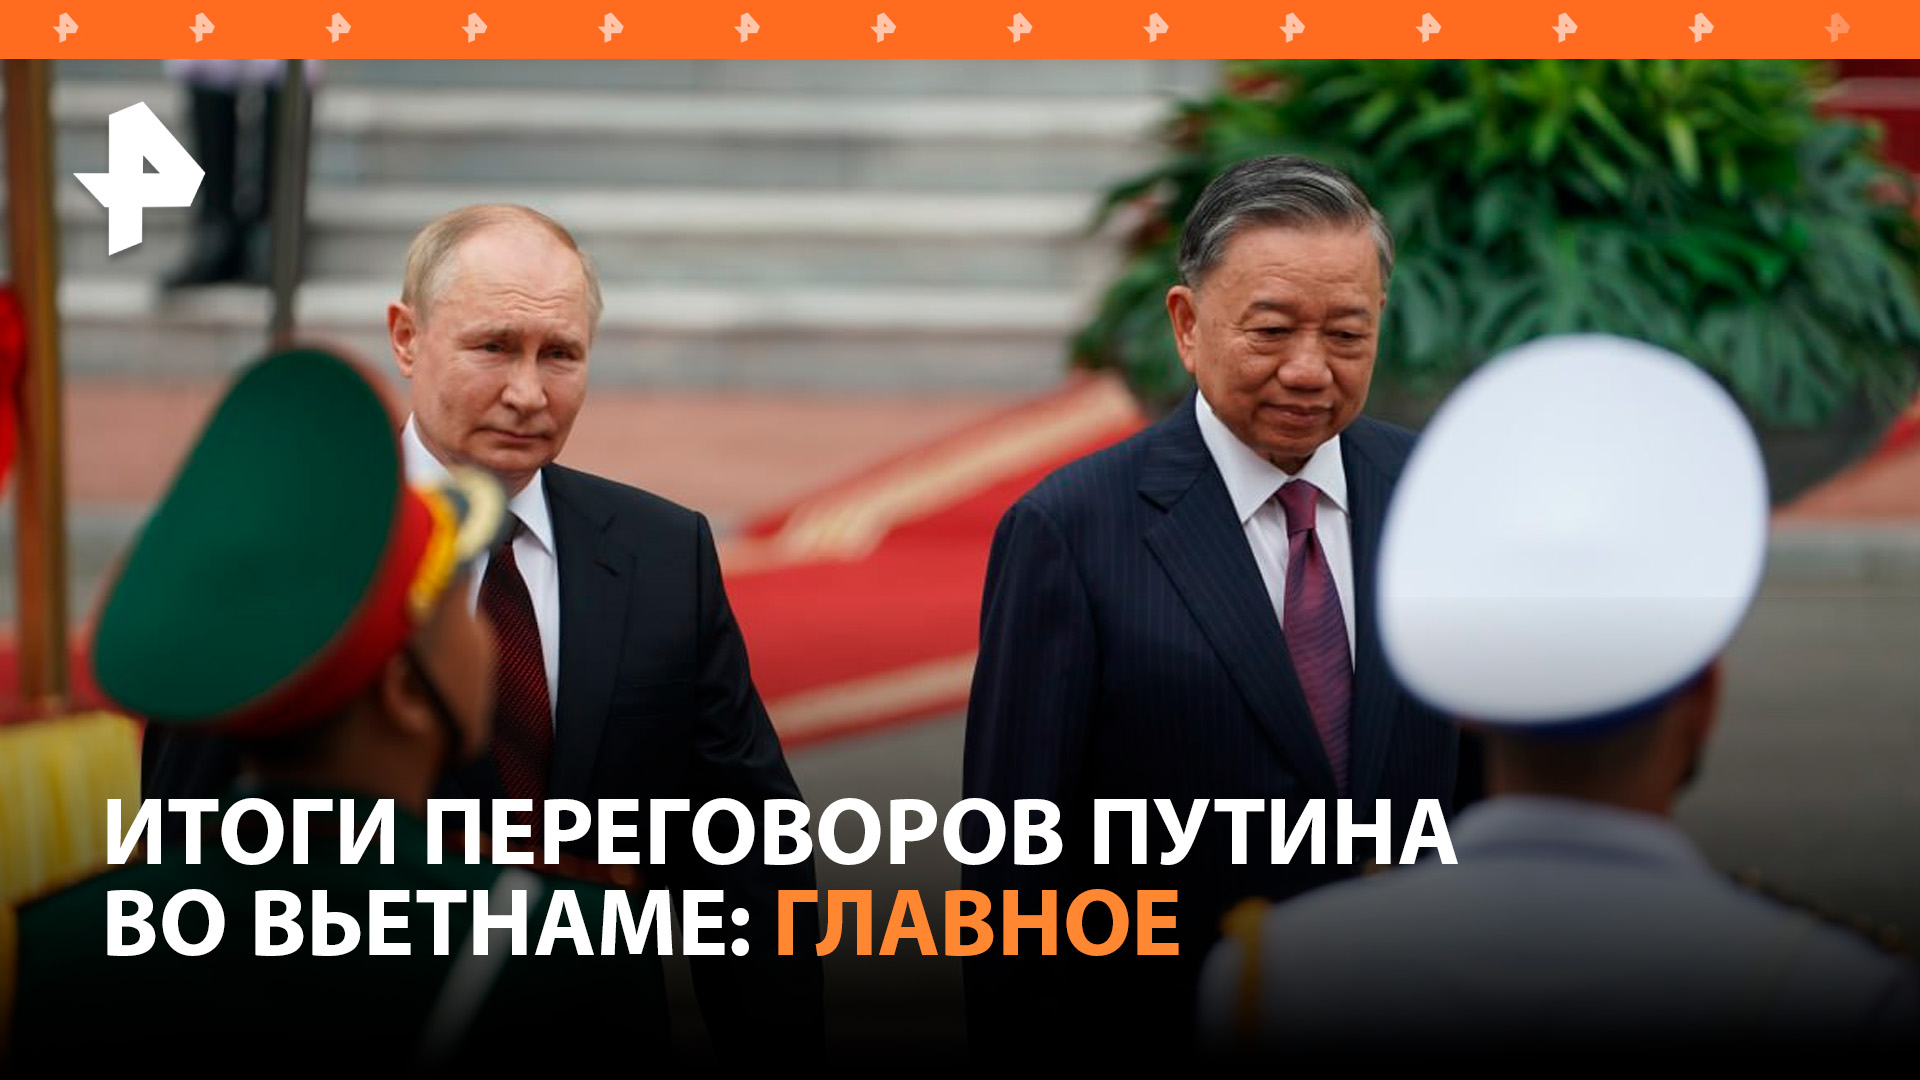 Путин и президент Вьетнама договорились о стратегическом партнерстве: итоги переговоров / РЕН